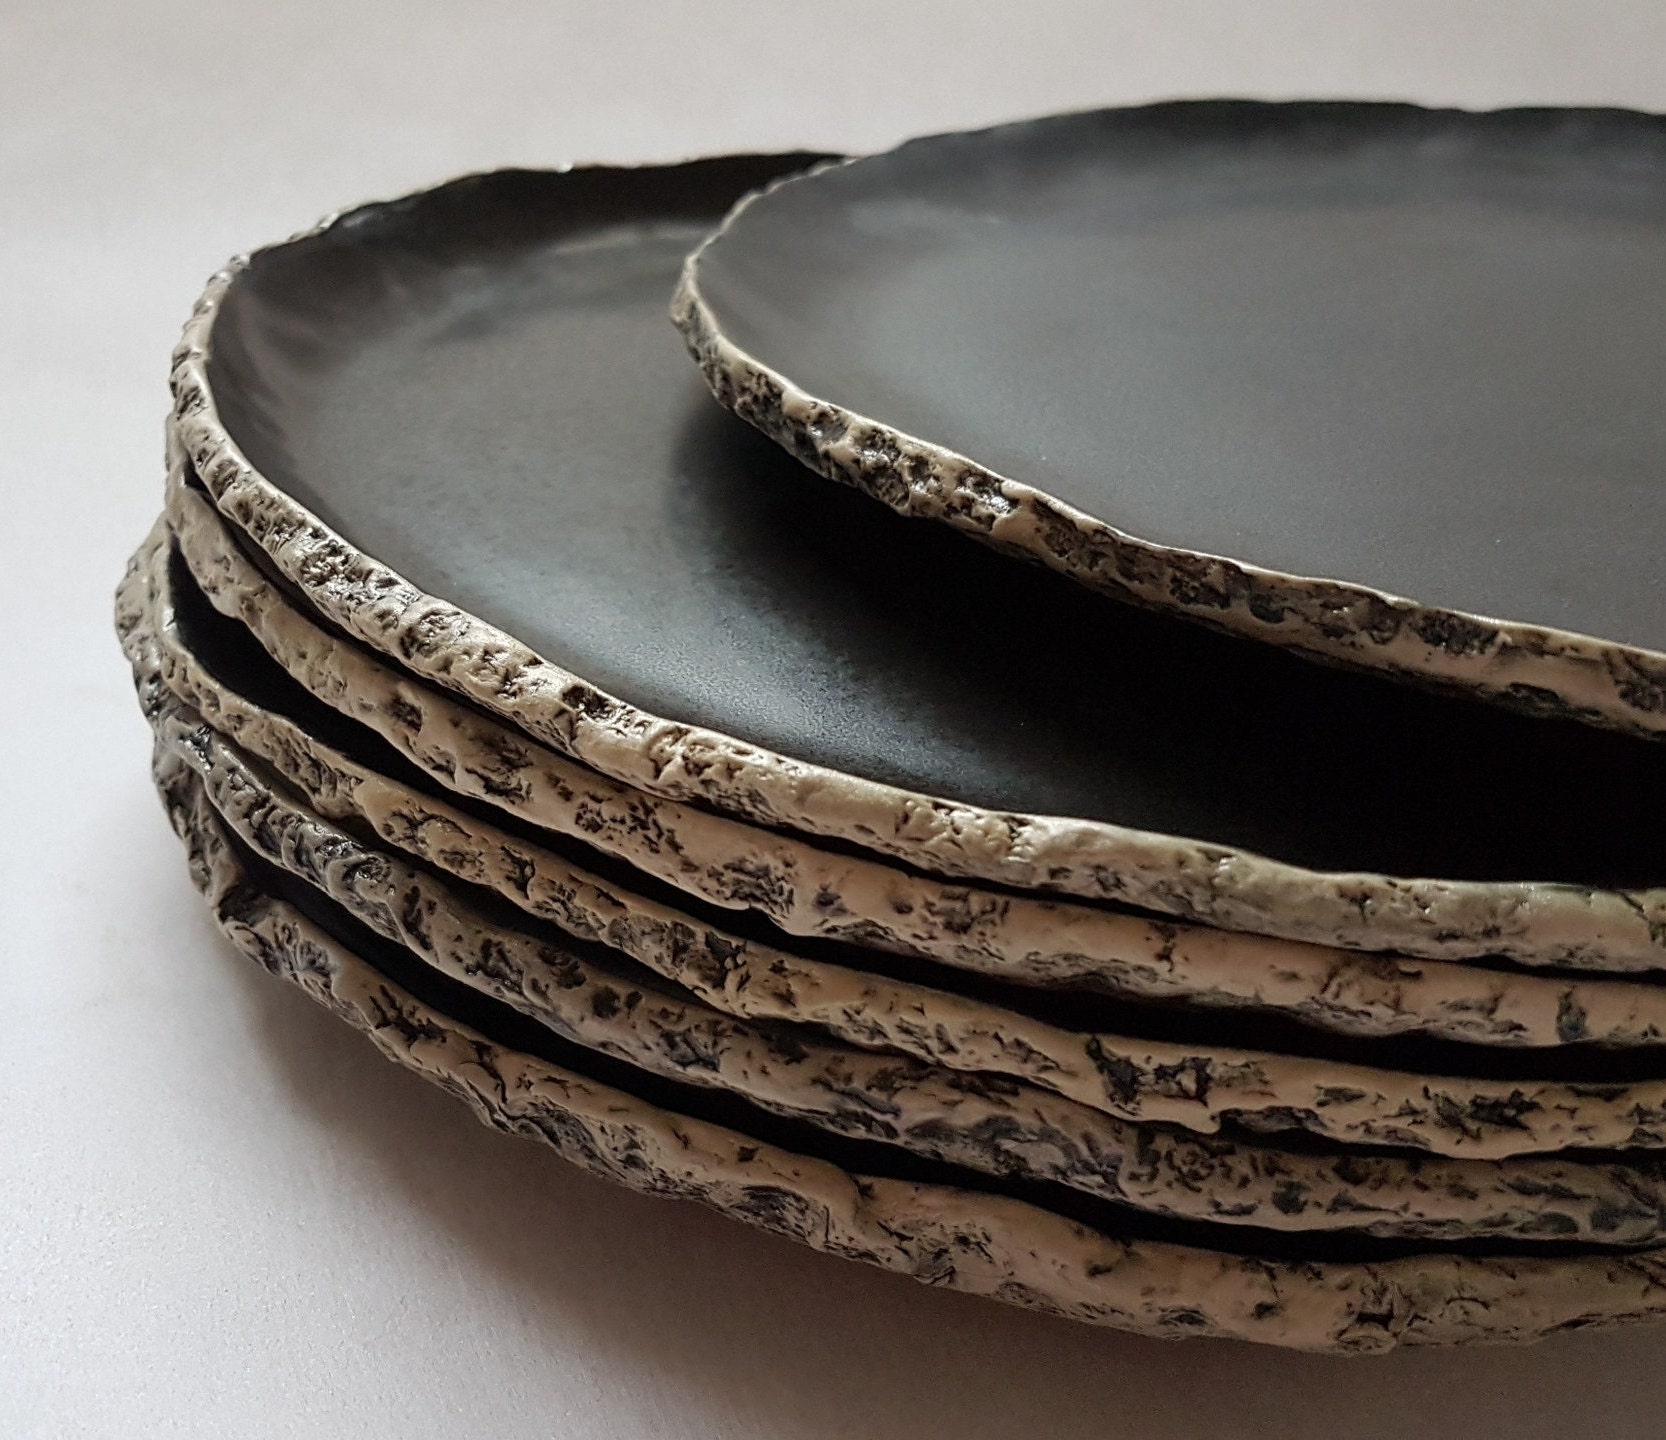 6 platos negros / 11.8 / 30cm / plato de cerámica hecho a mano